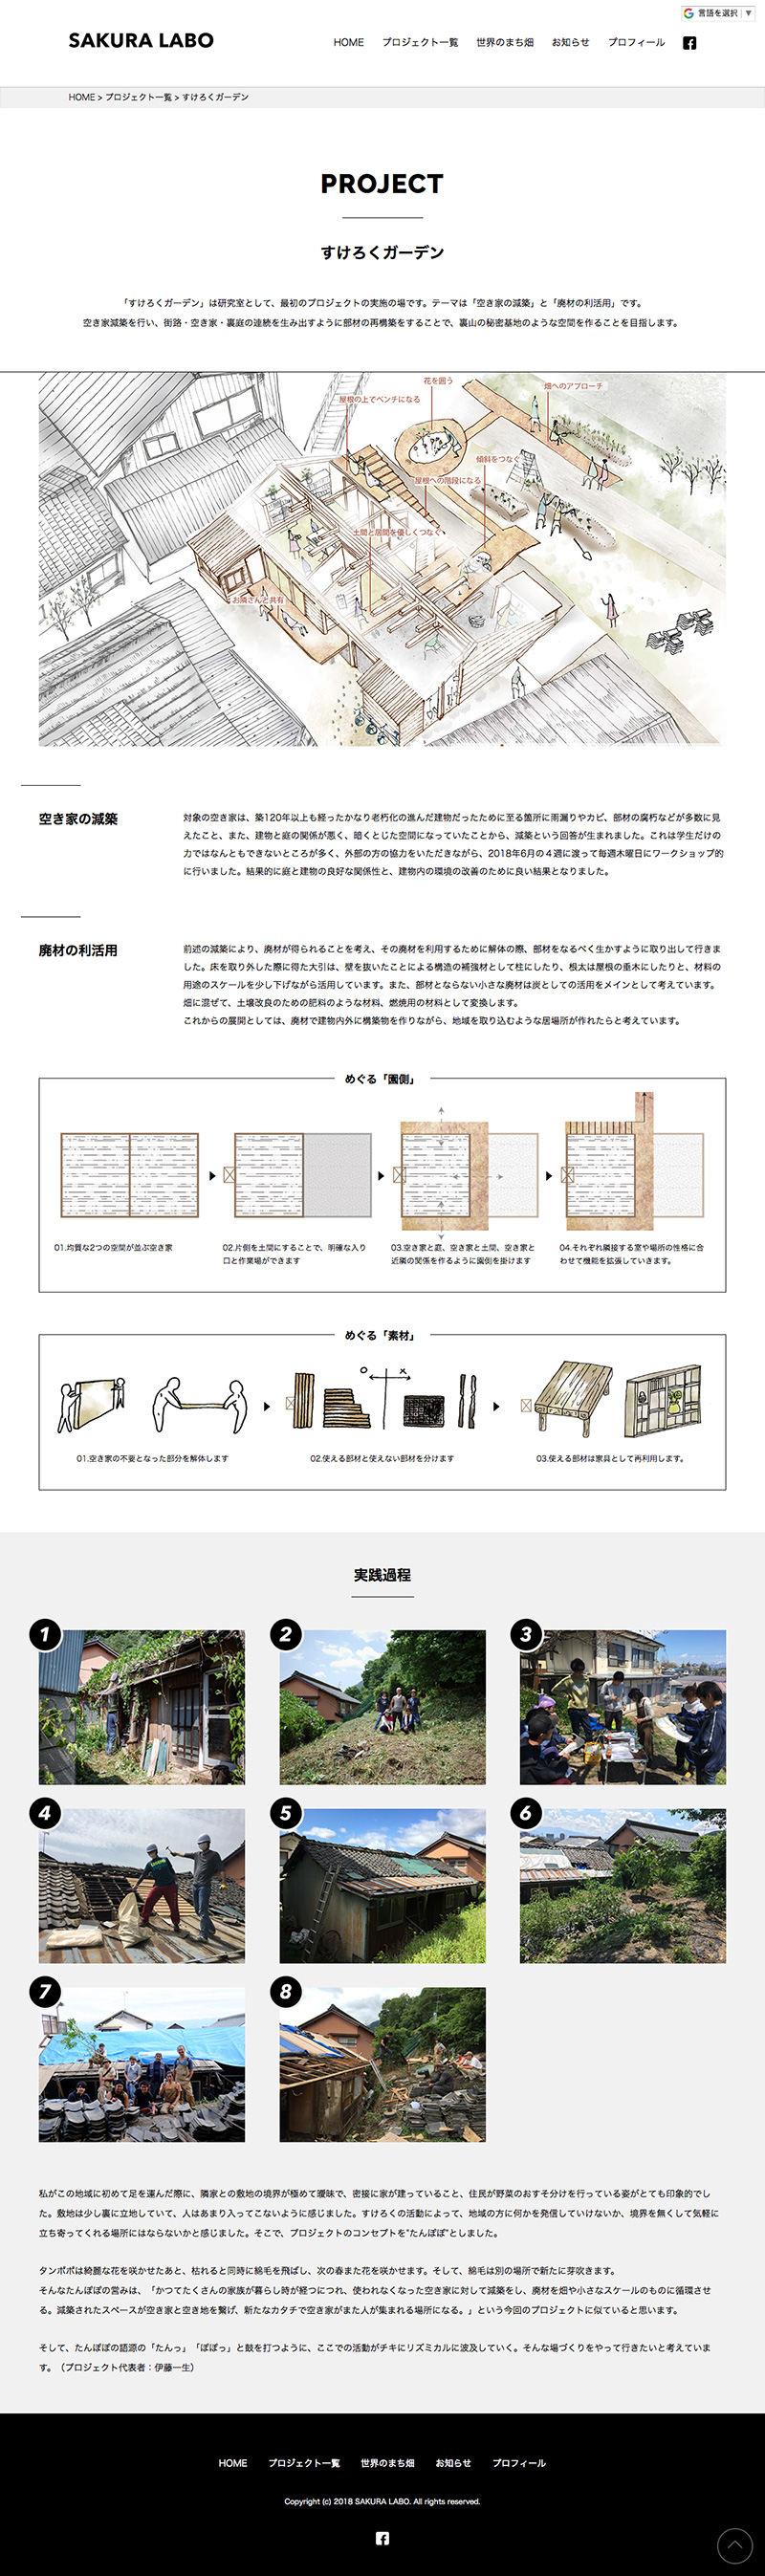 信州大学佐倉研究室Webサイト 下層ページデザイン